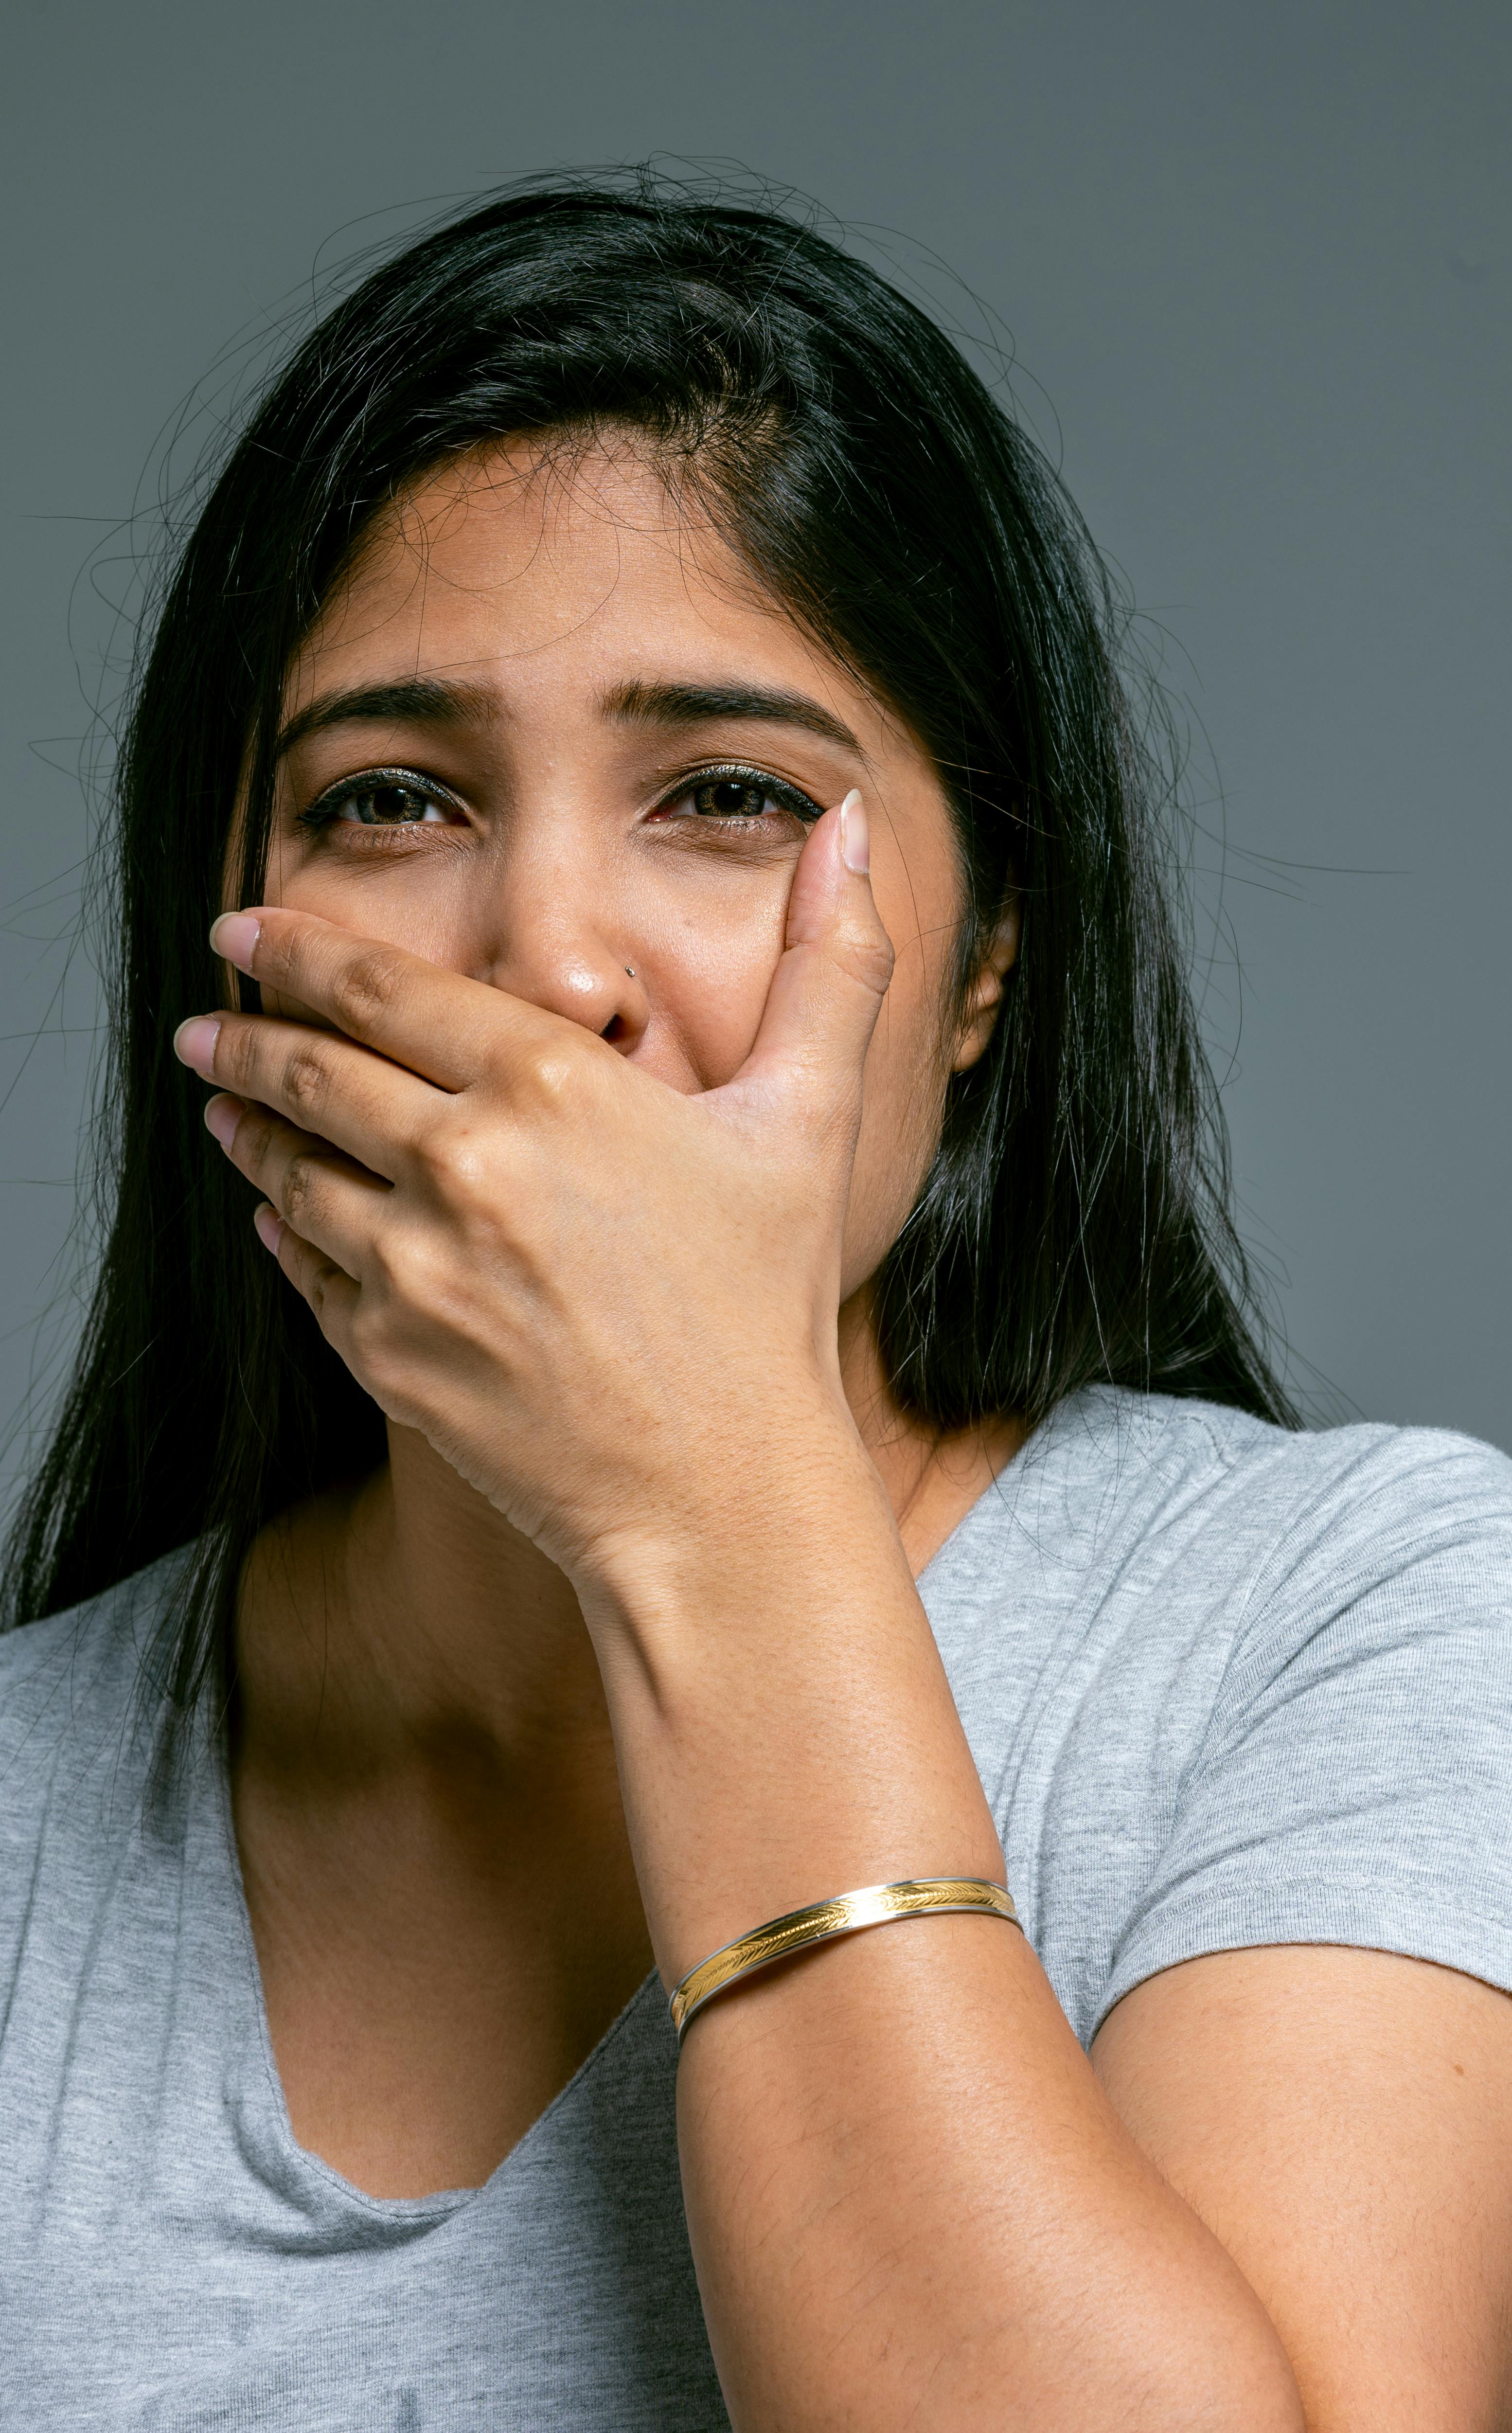 Mujer casi llorando | Fuente: Pexels